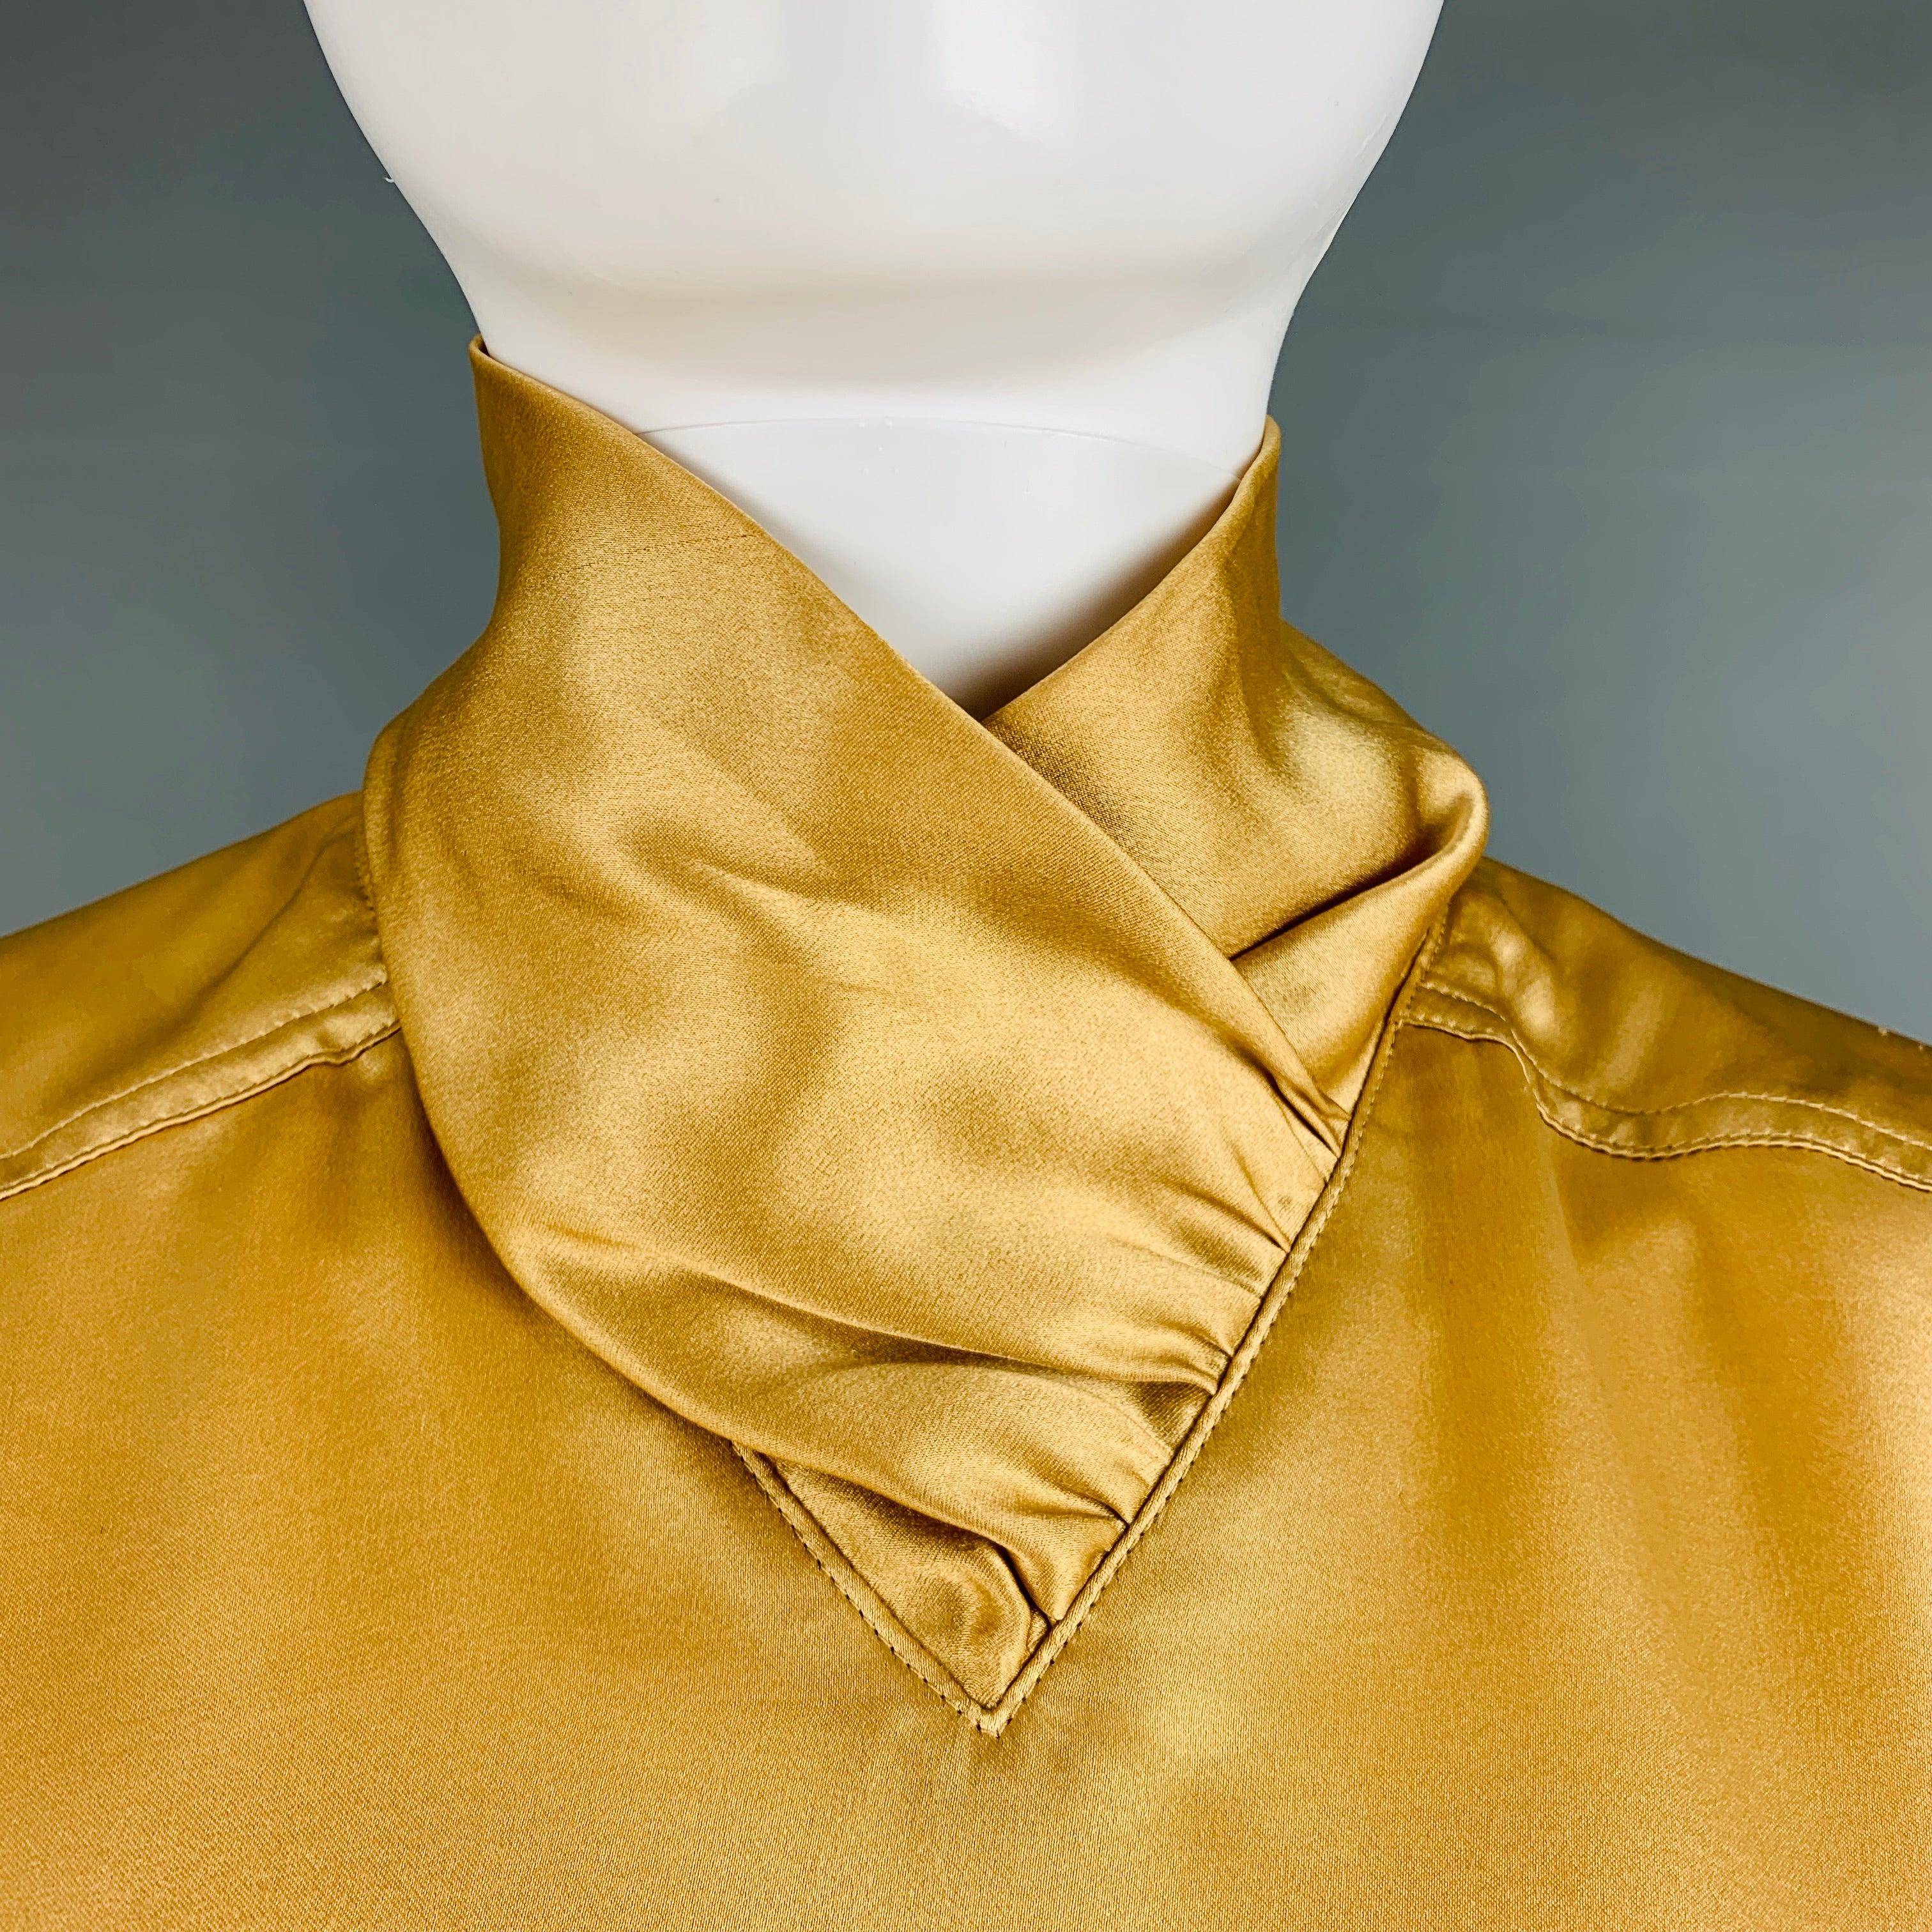 Die ESCADA Bluse mit langen Ärmeln ist aus beiger Seide gewebt und hat einen Dolman-Stil und einen Knopfverschluss am Rücken.
Sehr guter gebrauchter Zustand. Mäßige Gebrauchsspuren. 

Markiert:   4 

Abmessungen: 
 
Schulter: 20 Zoll Brustumfang: 39